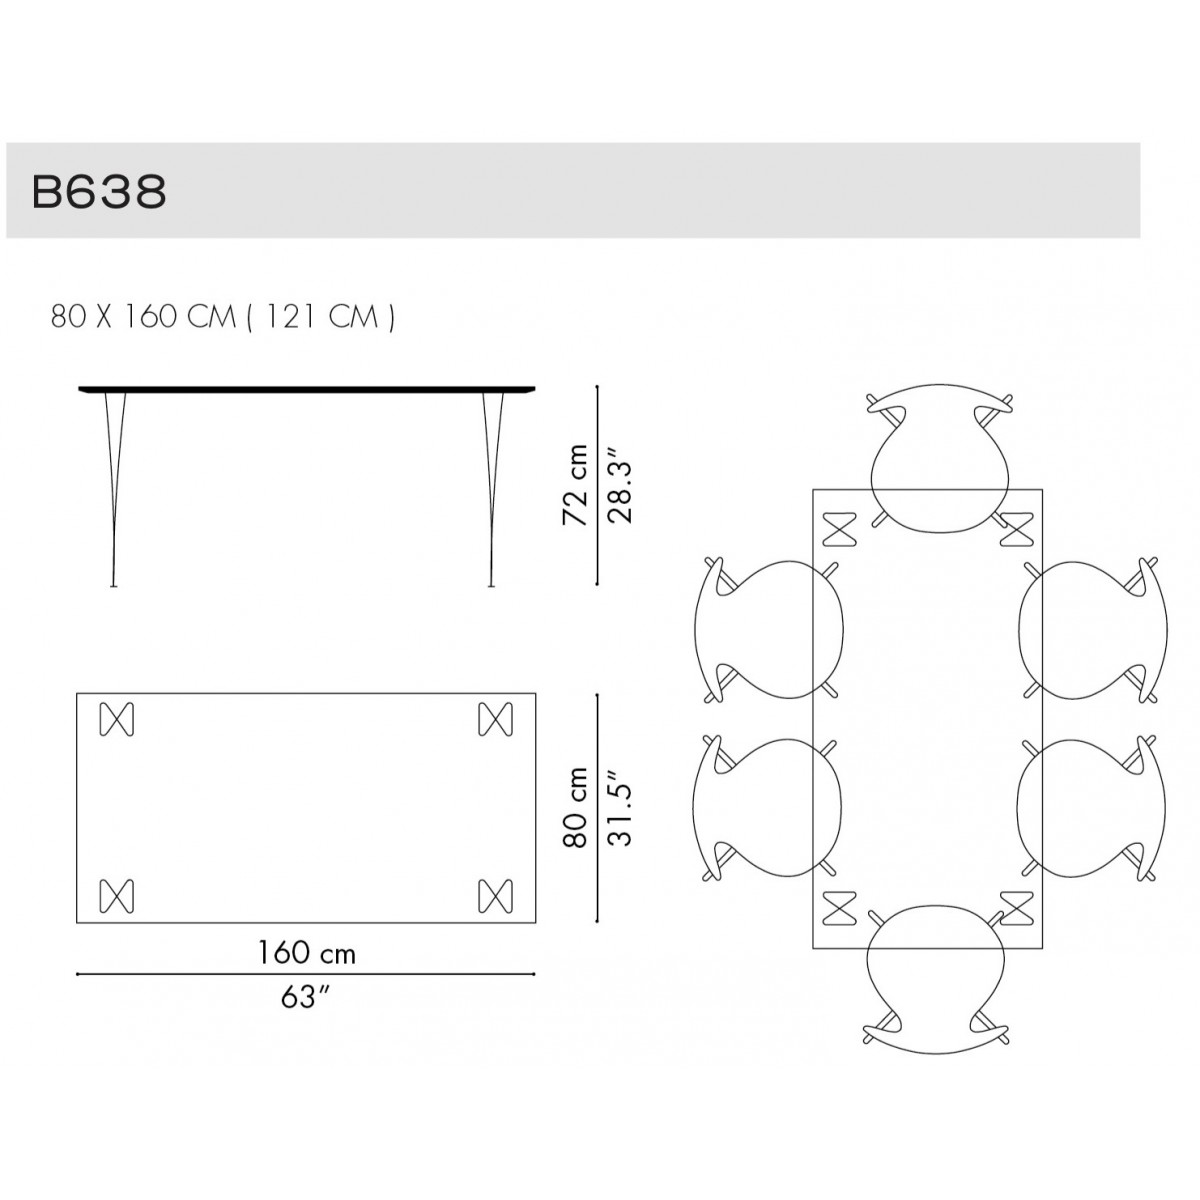 B638 - Rectangular Table Serie